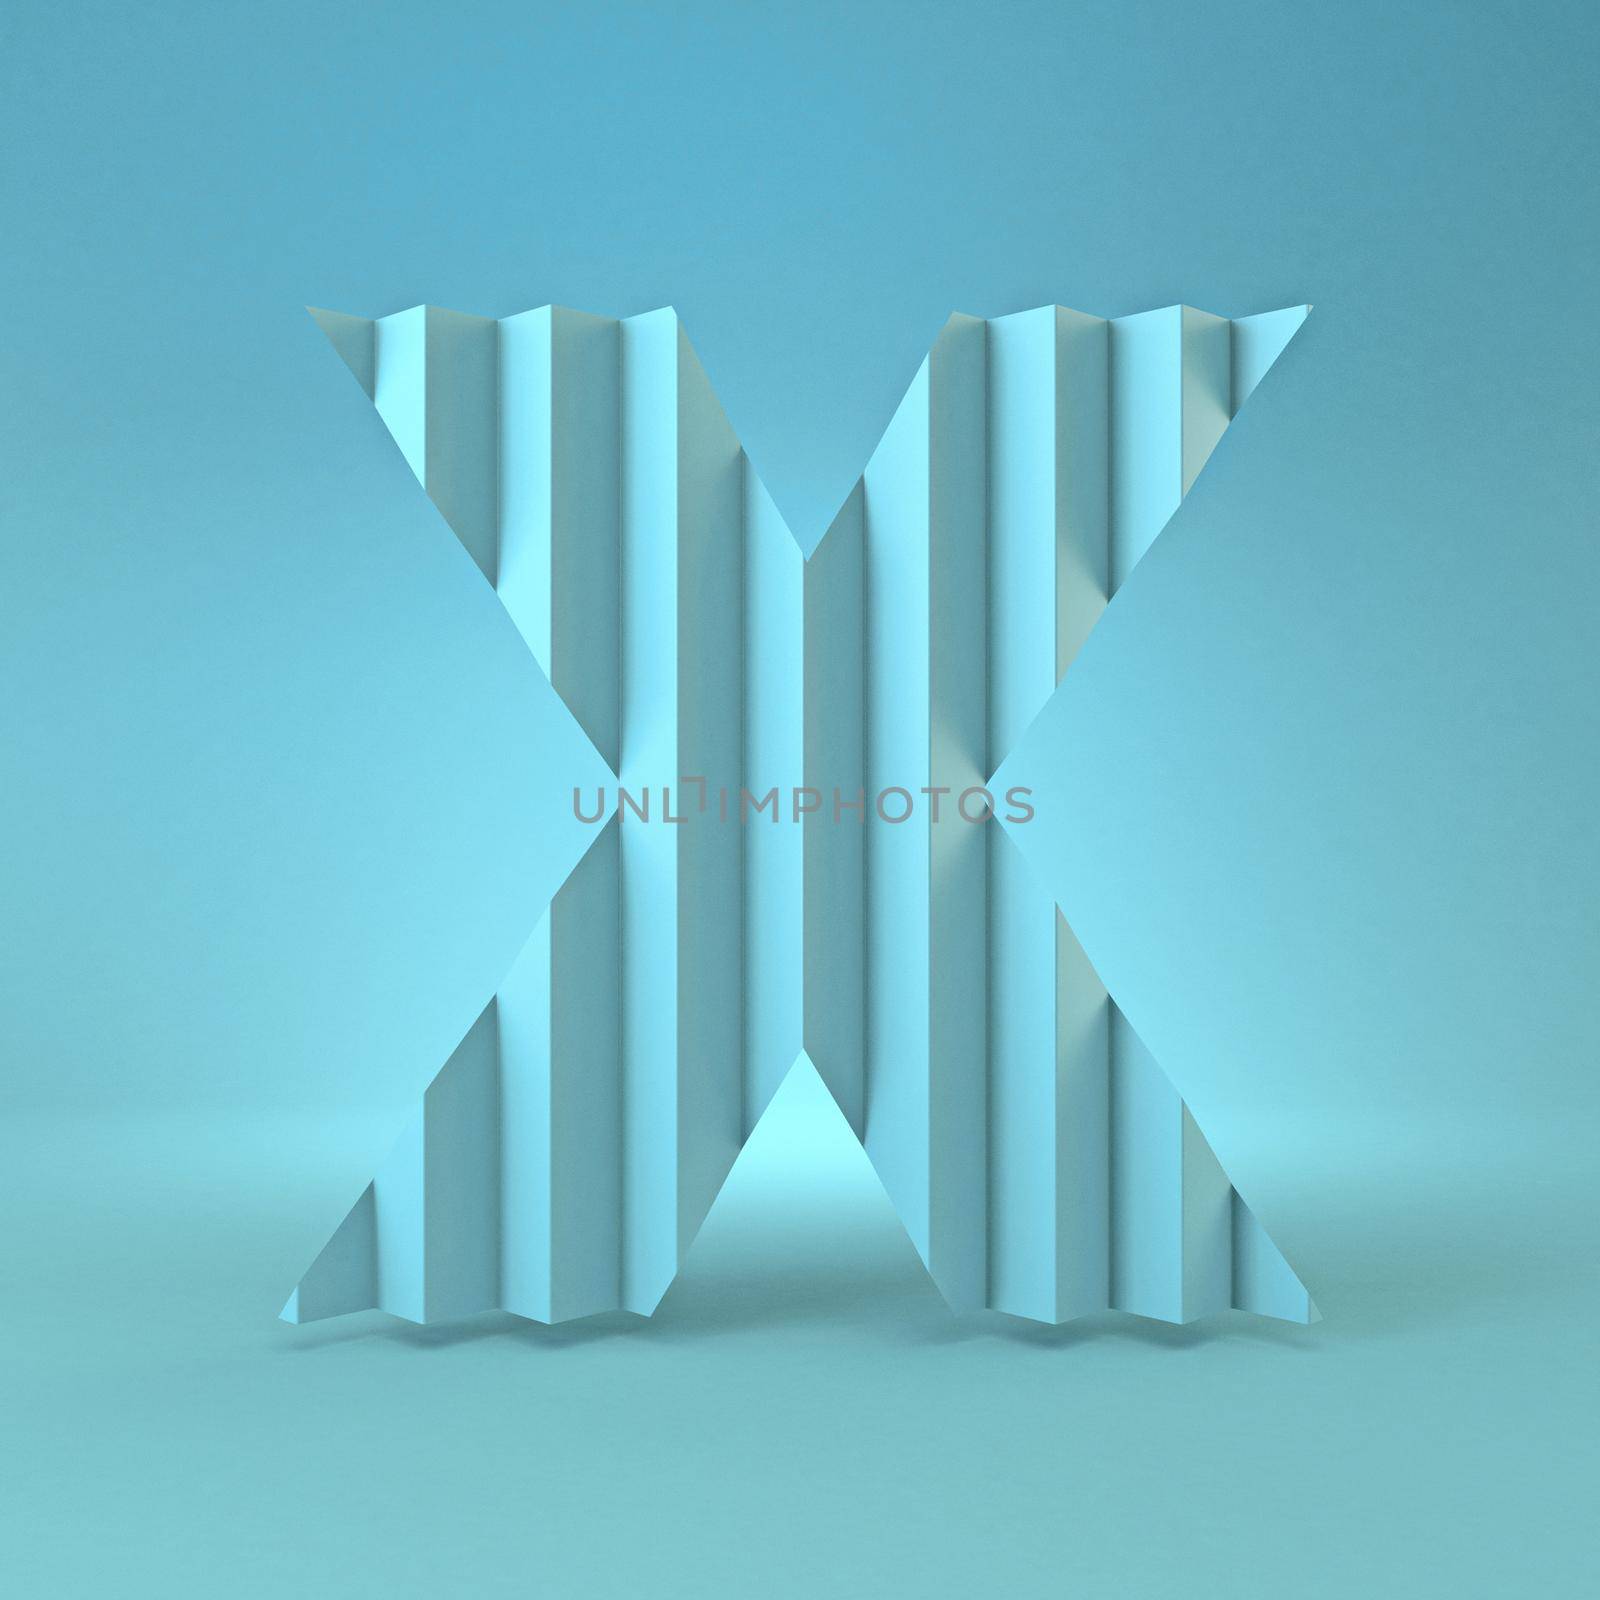 Cold blue font Letter X 3D render illustration on blue background